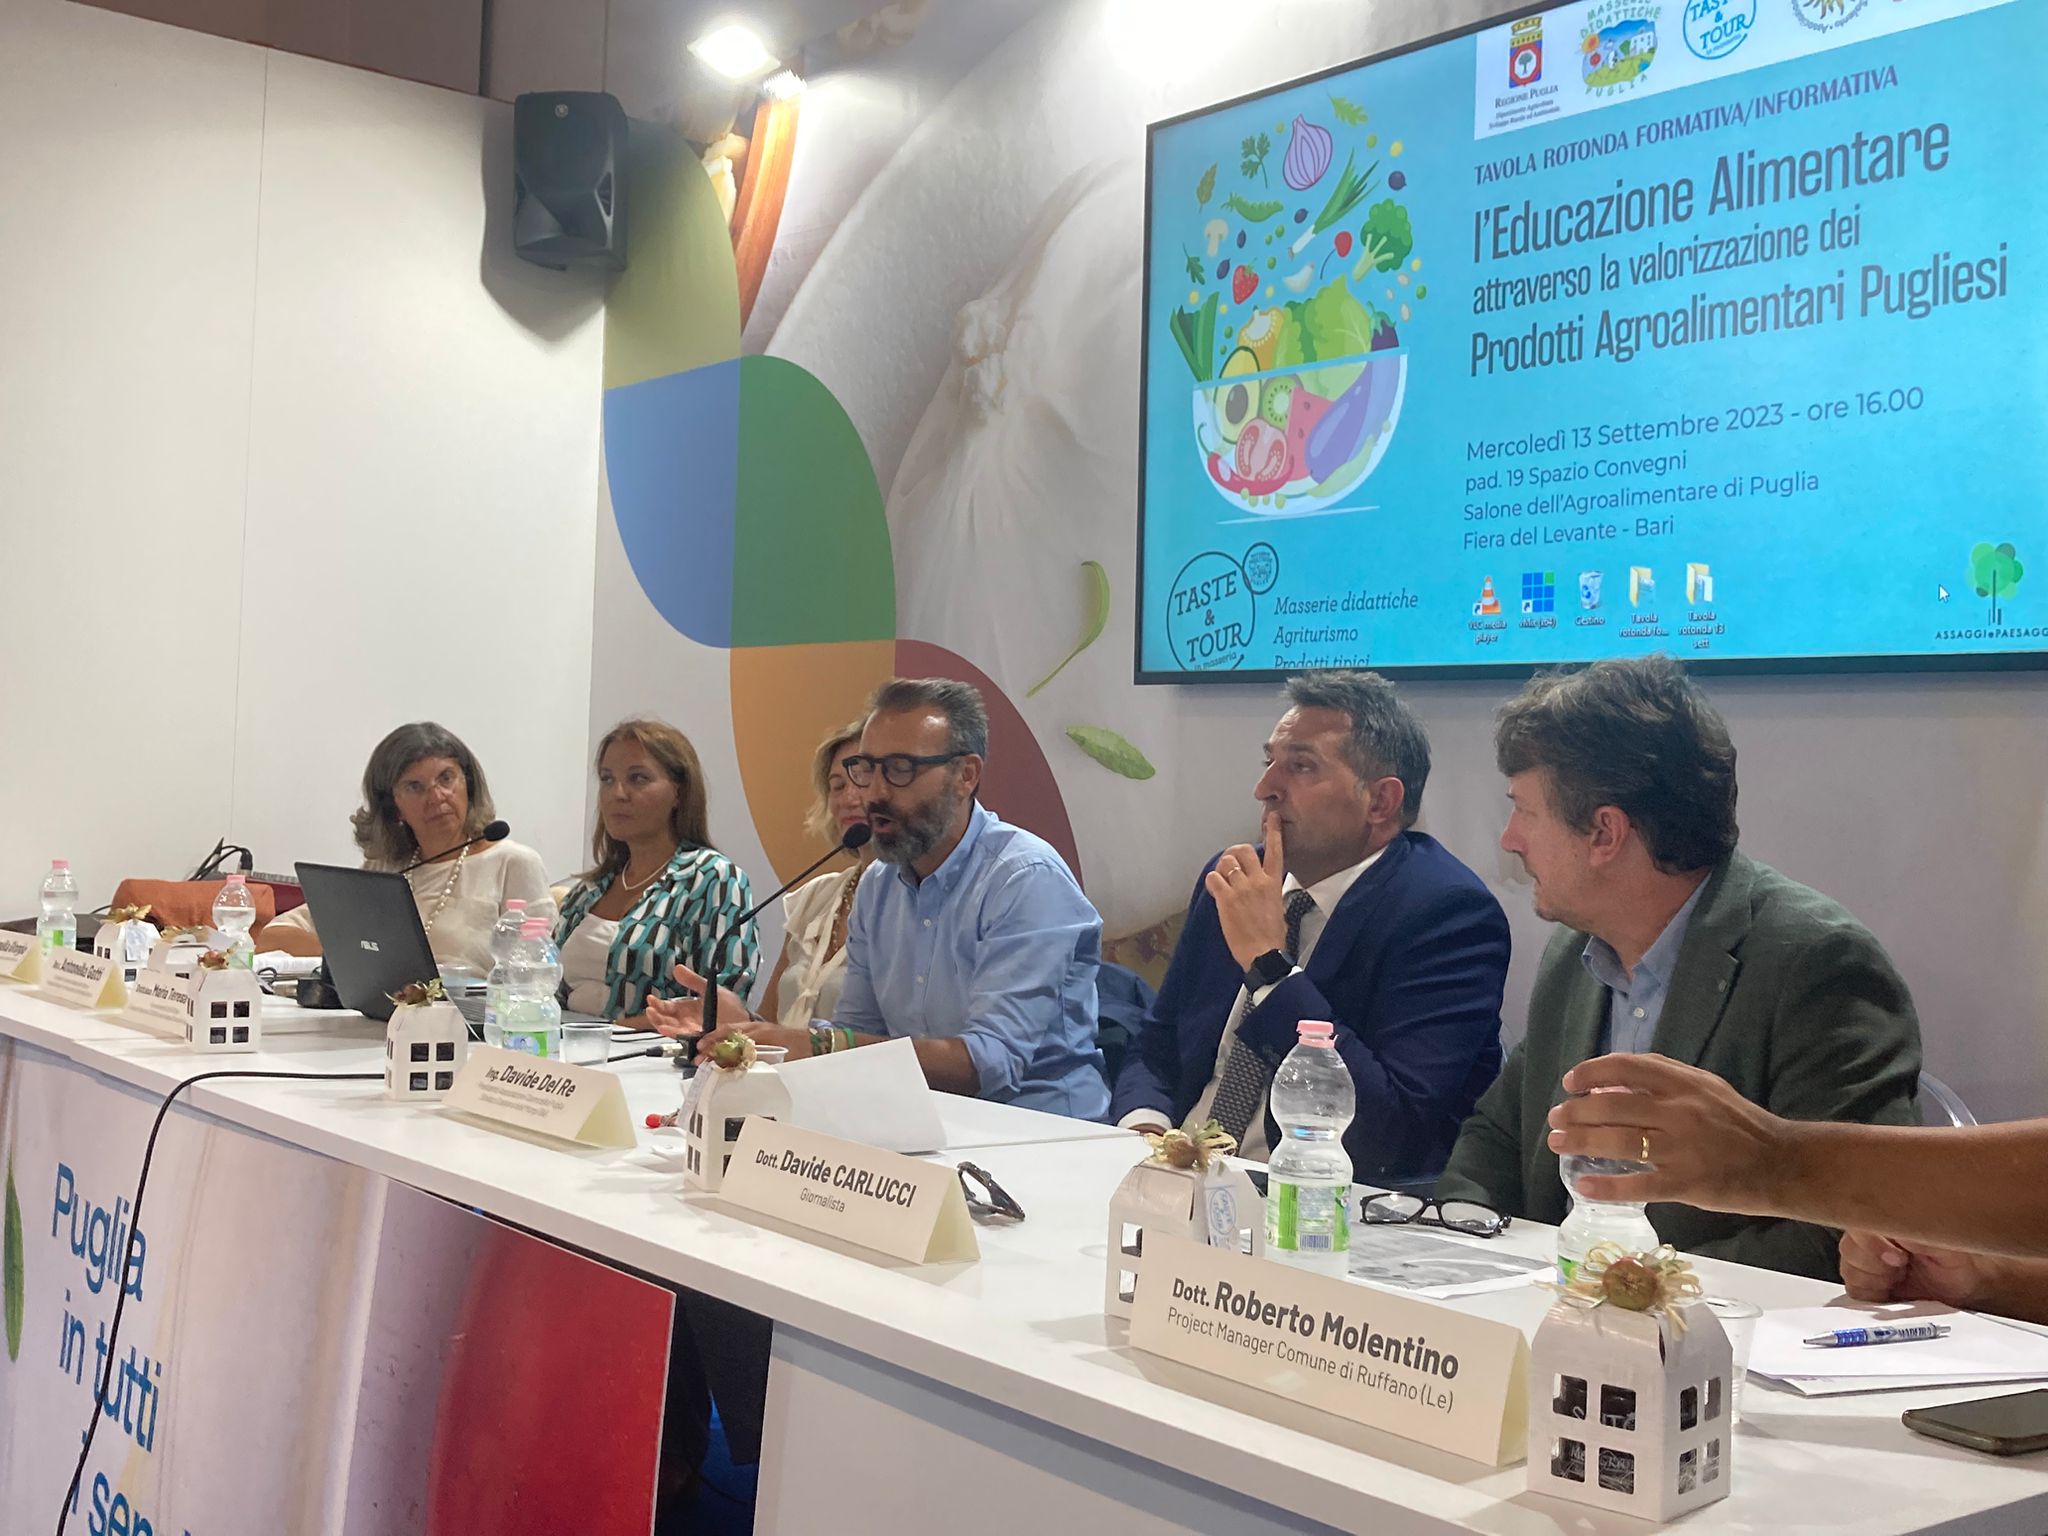 Galleria FdL 2023. Cibo, salute e innovazione: la Puglia investe nell'educazione alimentare - Diapositiva 1 di 6